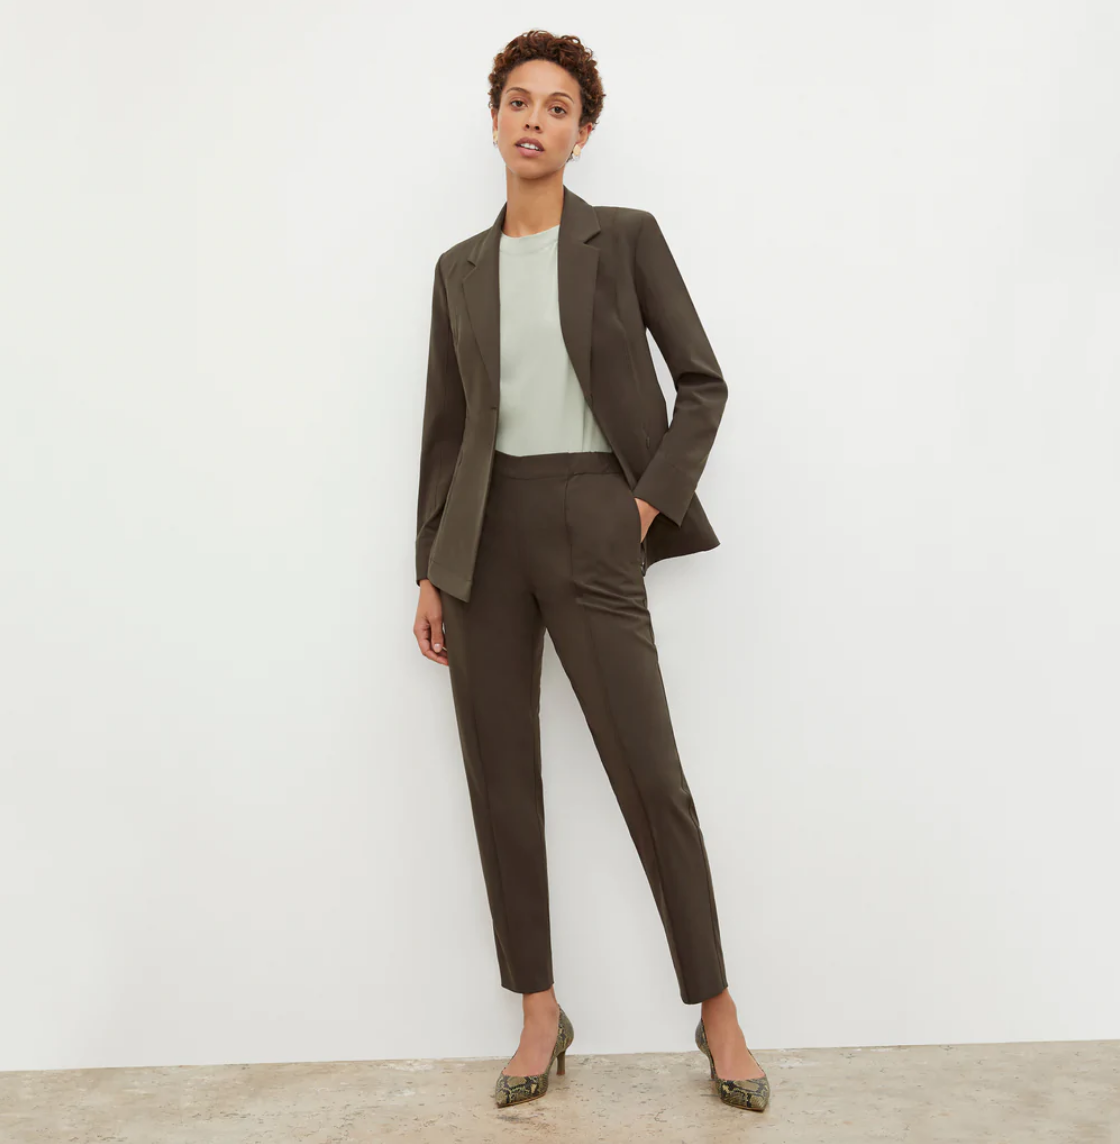 How long should a woman's suit jacket be? - Quora